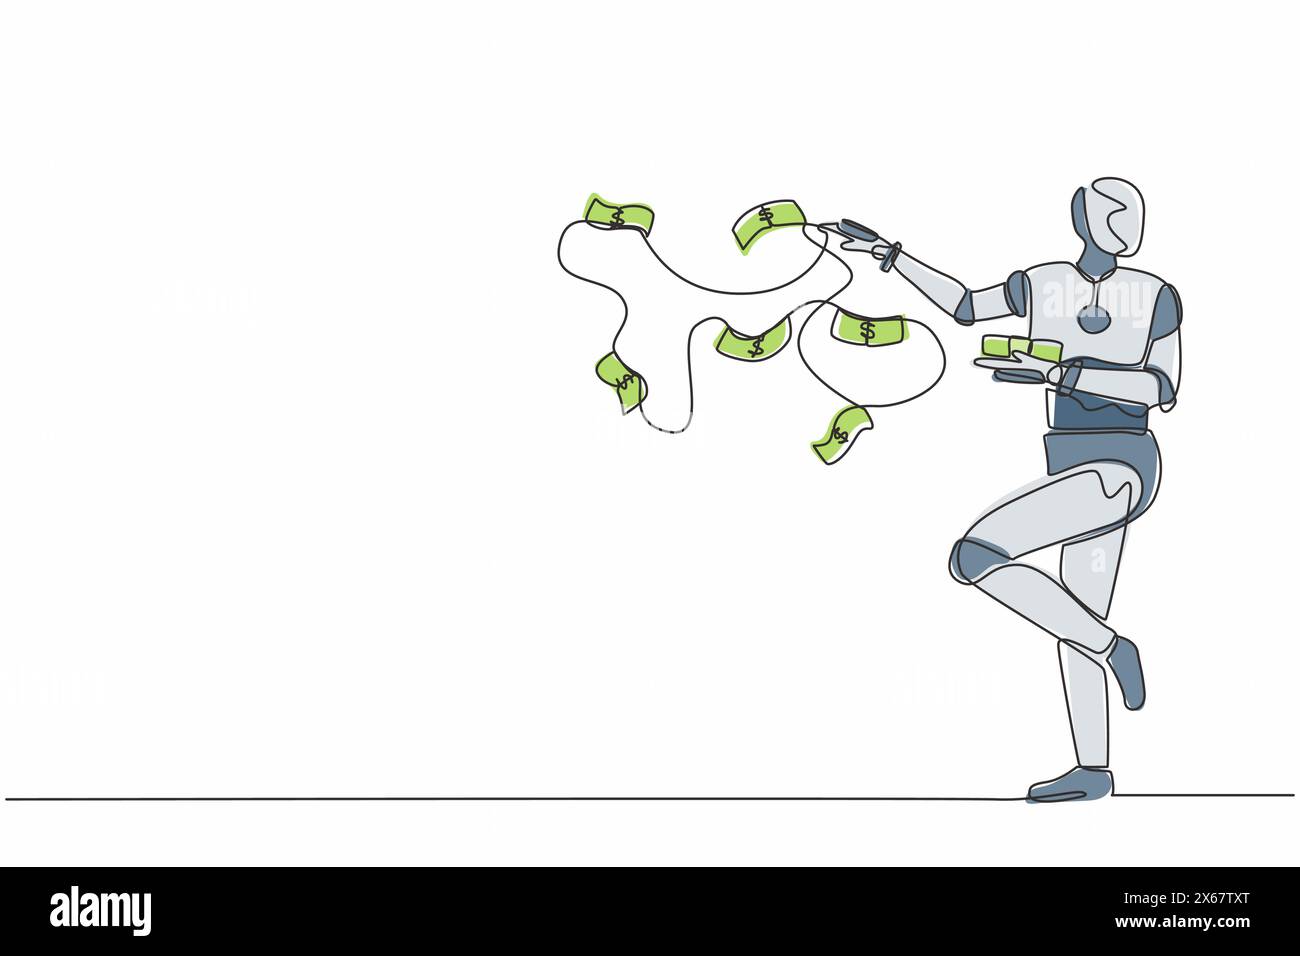 Robot de dessin continu à une ligne jetant des piles de billets de banque volants dans les airs. Organisme cybernétique robot humanoïde. Développement futur de la robotique Illustration de Vecteur